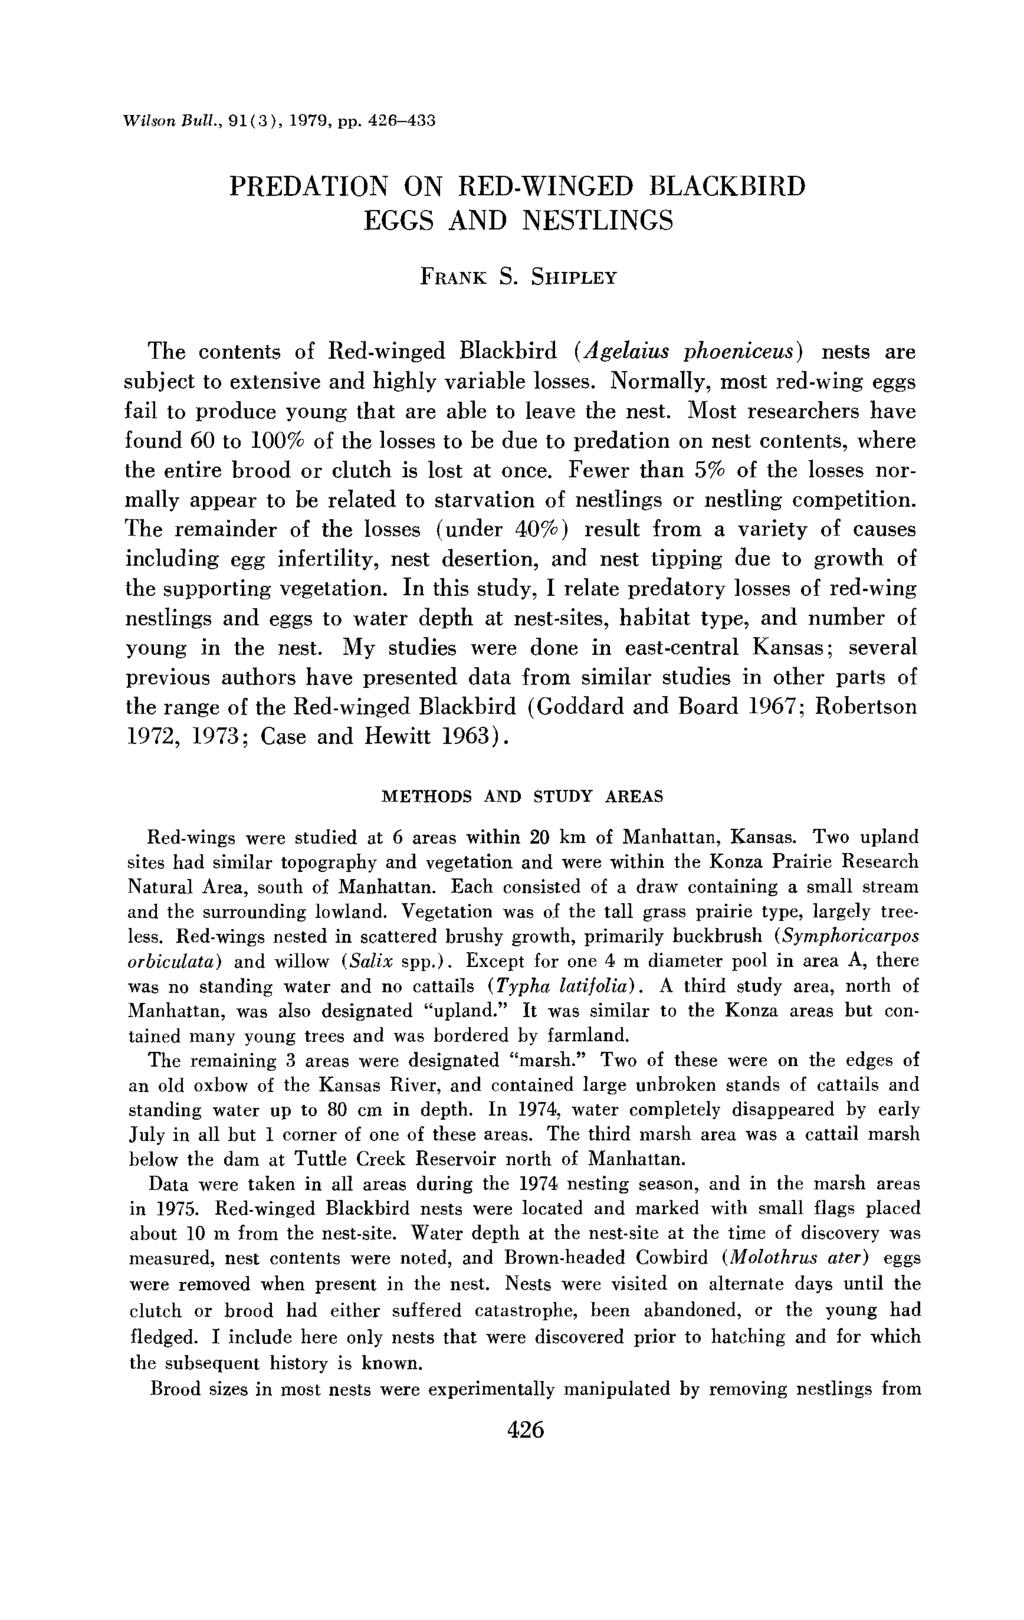 Wilson Bull., 91( 3), 1979, pp. 426-433 PREDATION ON RED-WINGED BLACKBIRD EGGS AND NESTLINGS FRANK S.